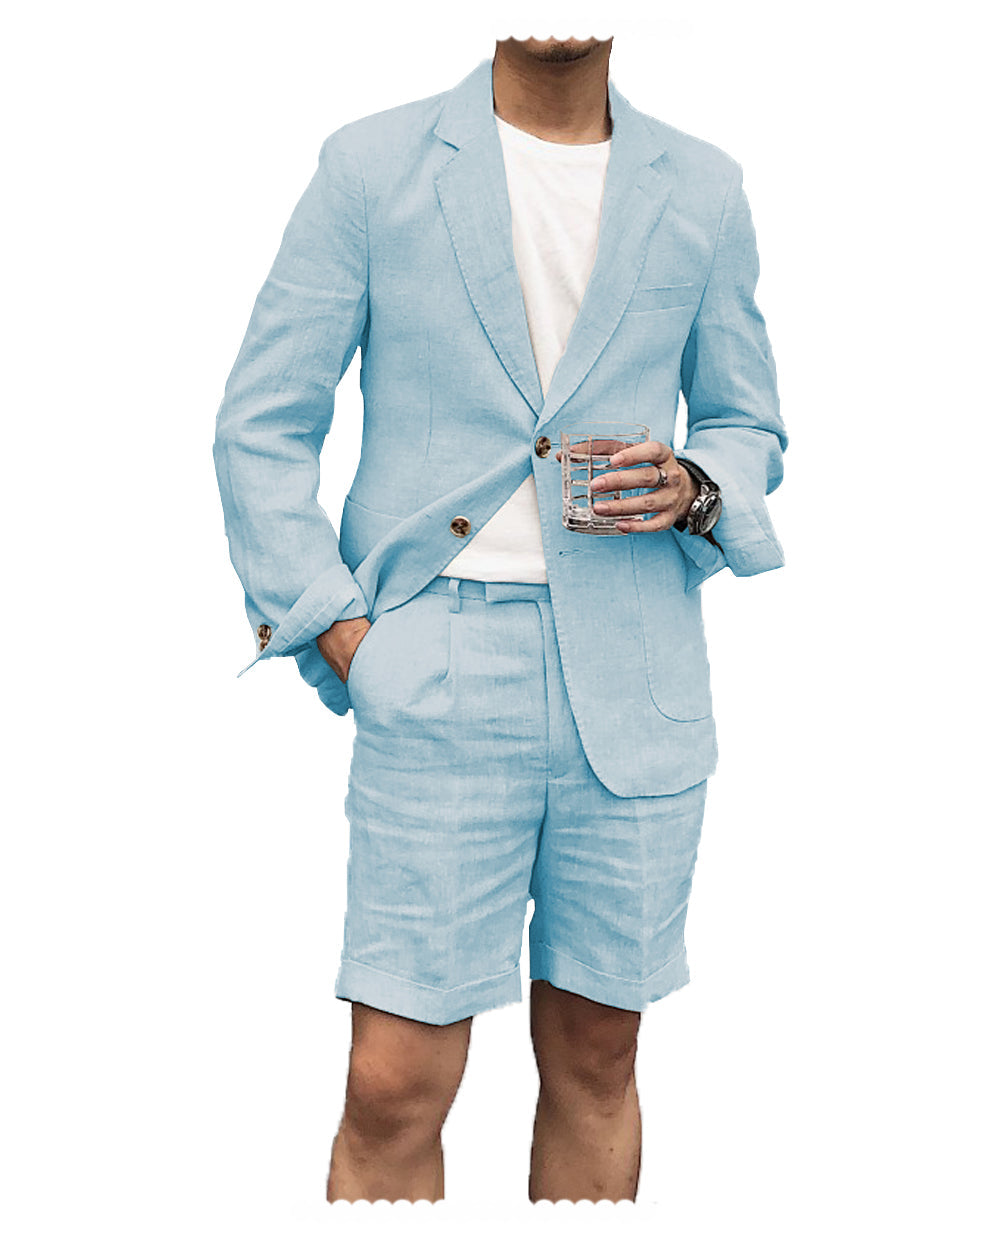 Casual 2 Piece Men's Suit Flat Linen Notch Lapel Tuxedos (Blazer+Shorts) mens event wear